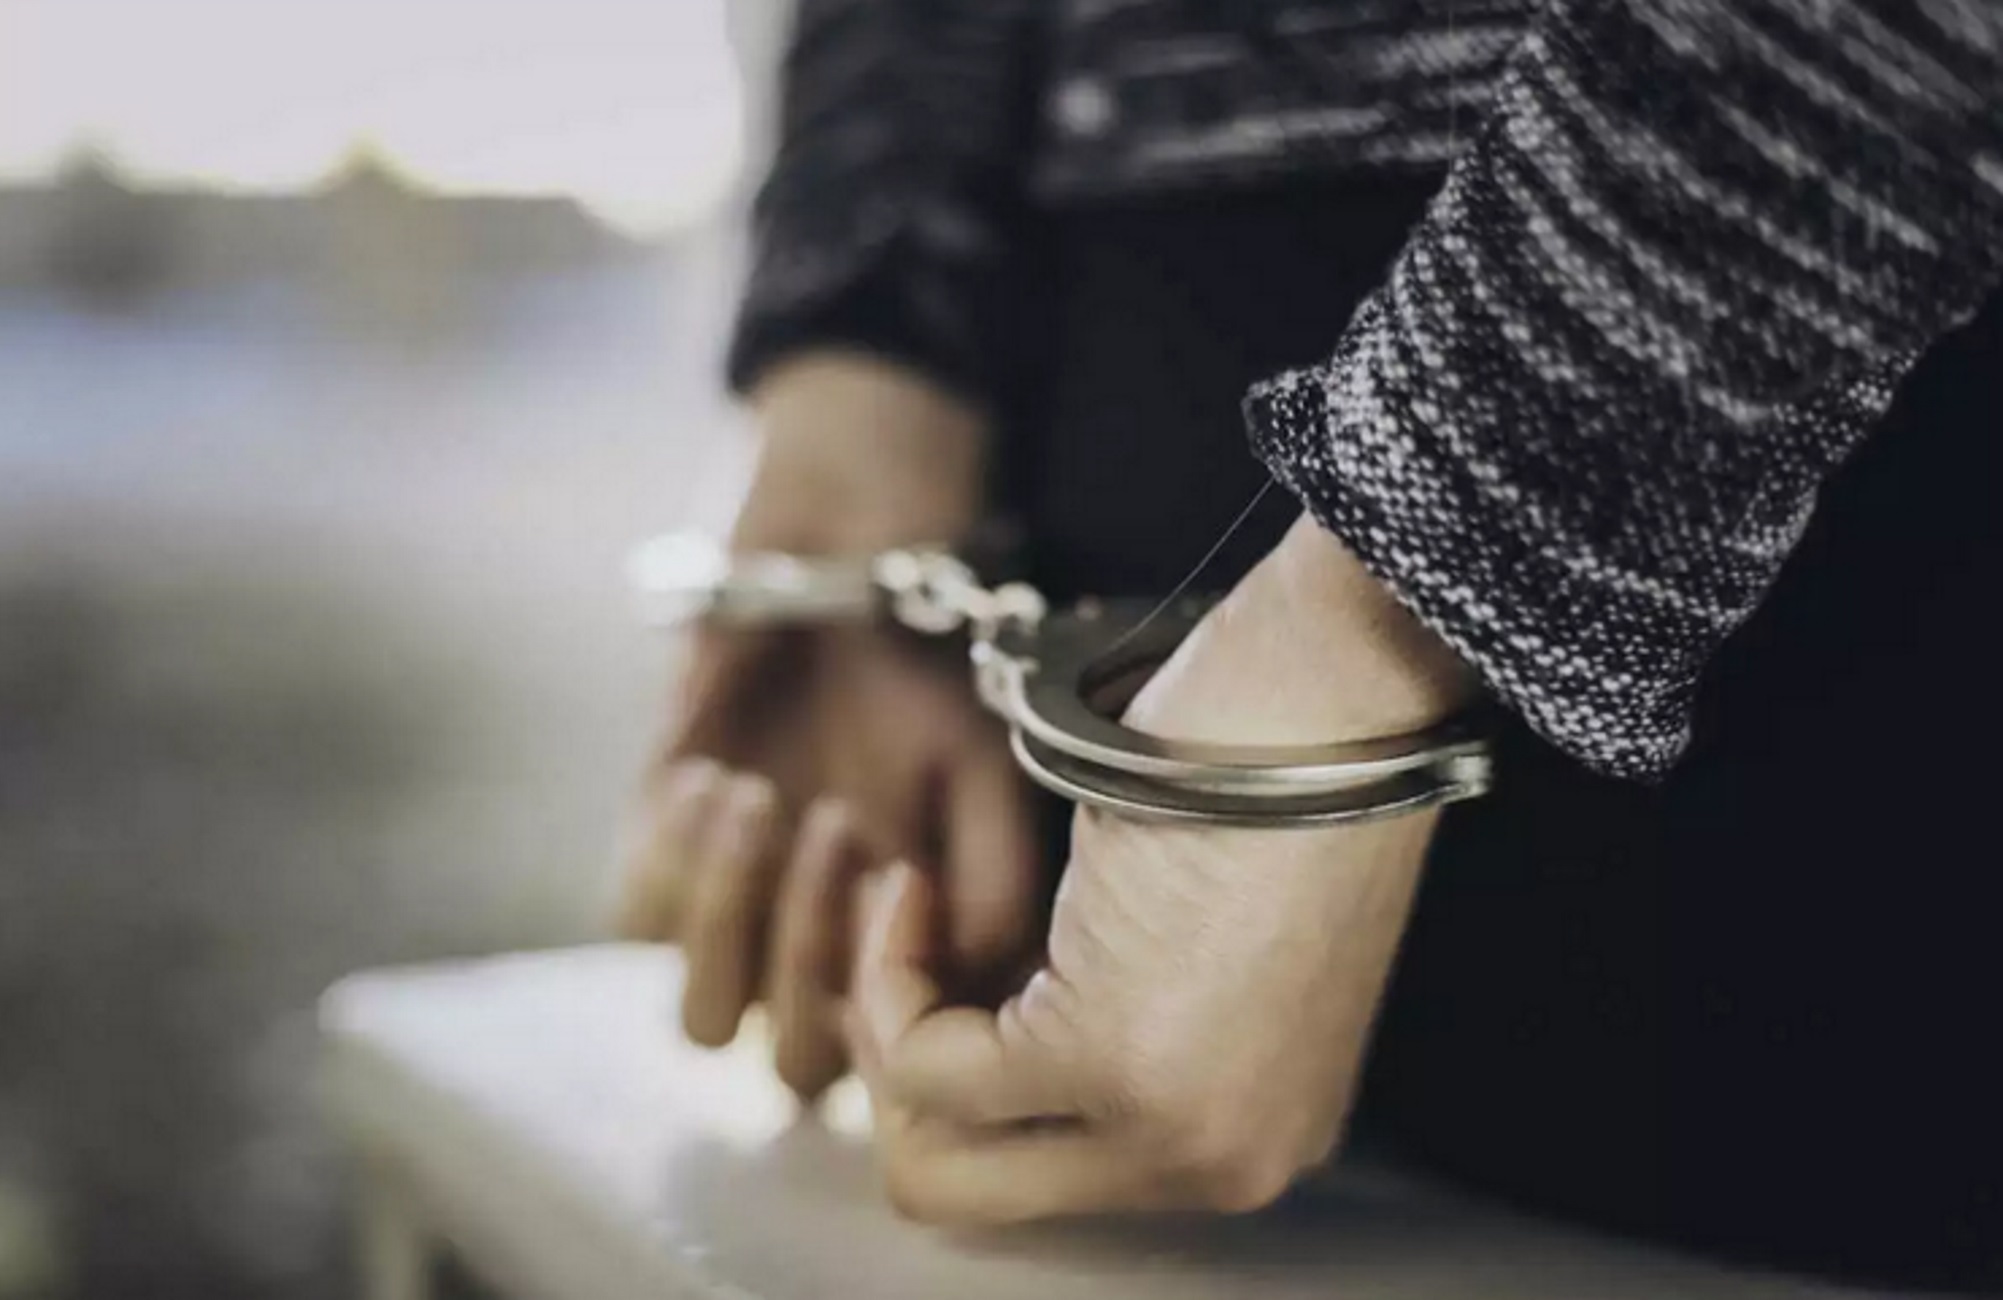 Θεσσαλονίκη: Συνελήφθη 26χρονος στην Τούμπα που εισήγαγε ναρκωτικά μέσω ταχυδρομικών δεμάτων